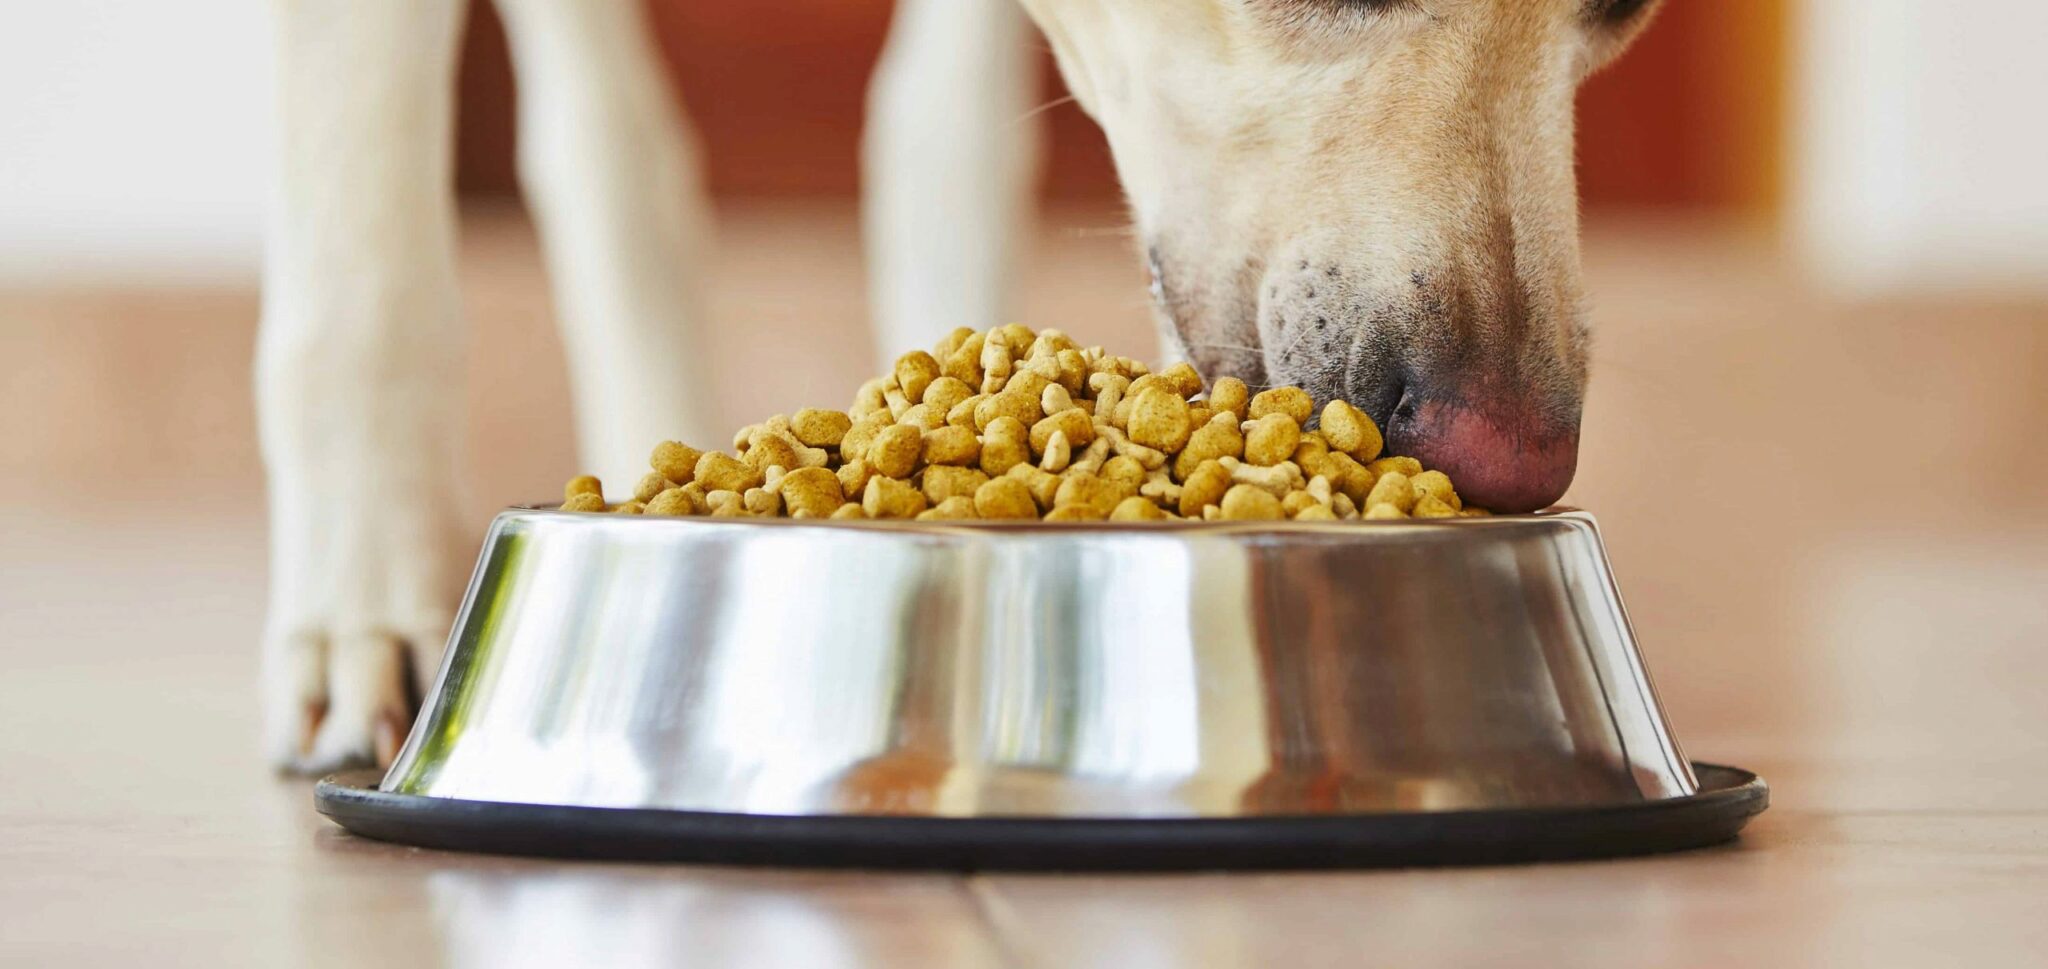 6 Migliori Alimenti Per Cani Per Curare Le Malattie Del Fegato Nel 2021 Recensioni E Scelte Migliori